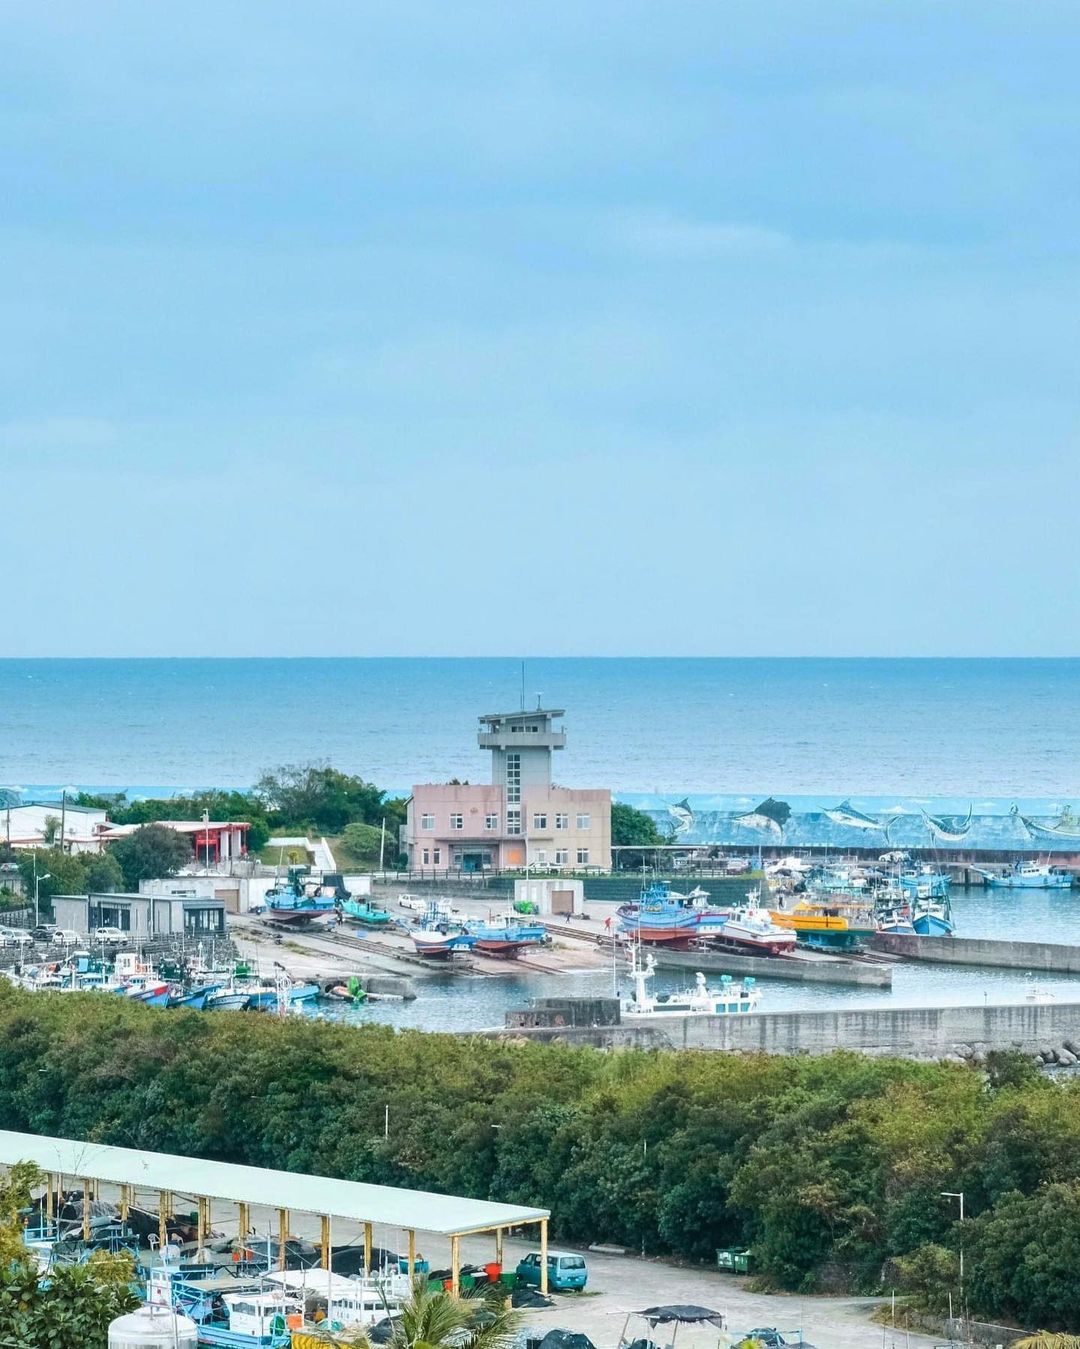 從港口開始讚嘆「原來成功是這樣一座小鎮」-歡迎在您的照片標記我們 @ecnsa讓更多人看見台灣最美東海岸在想投稿的照片上標註@ec...